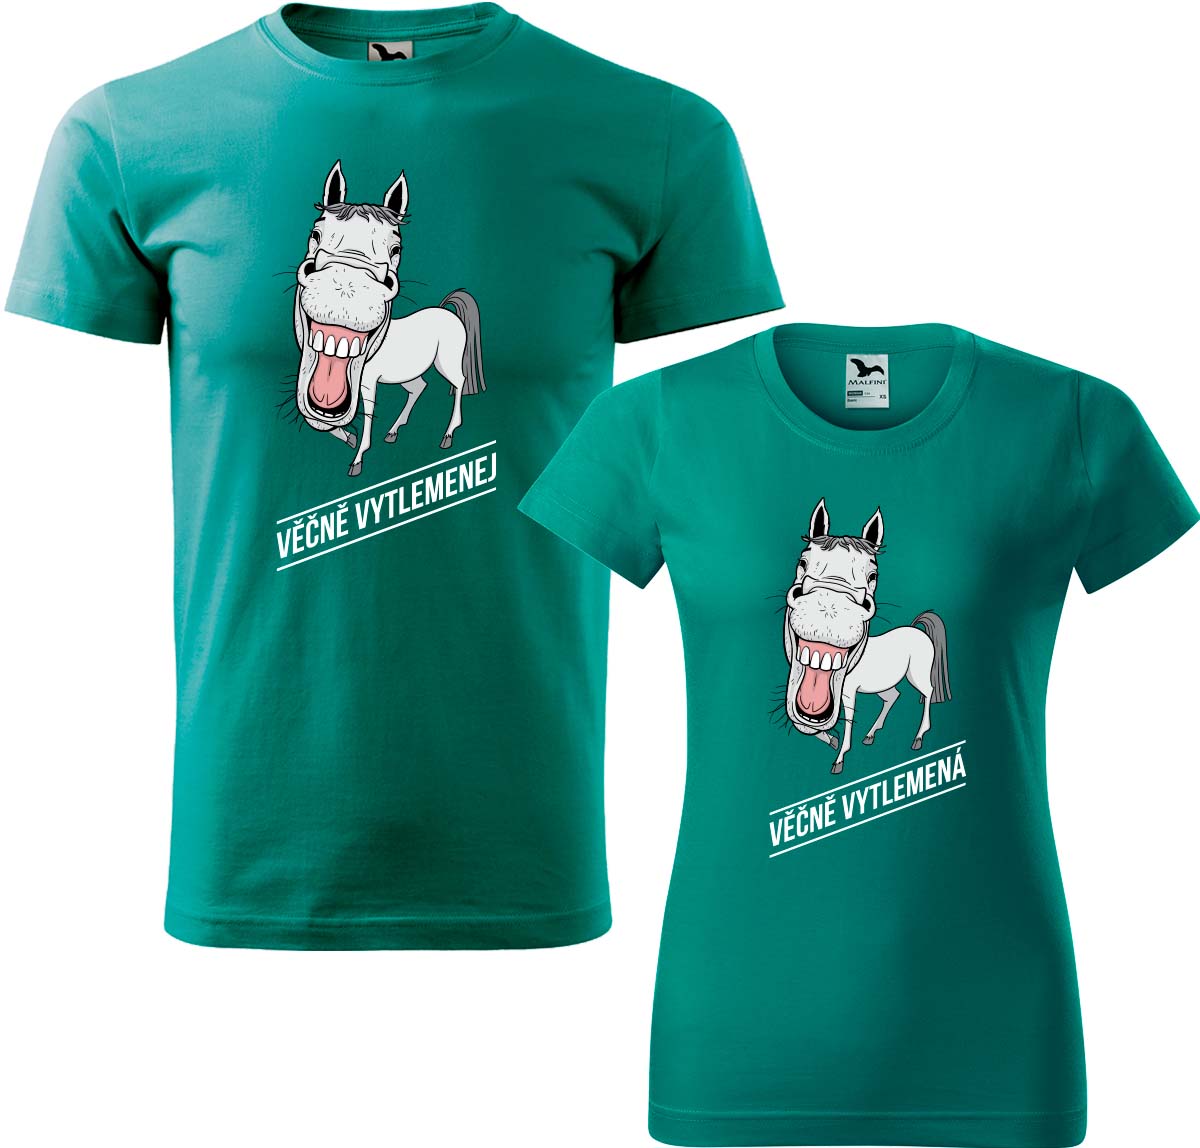 Trička pro páry - Věčně vytlemenej a věčně vytlemená Barva: Emerald (19), Velikost dámské tričko: S, Velikost pánské tričko: XL